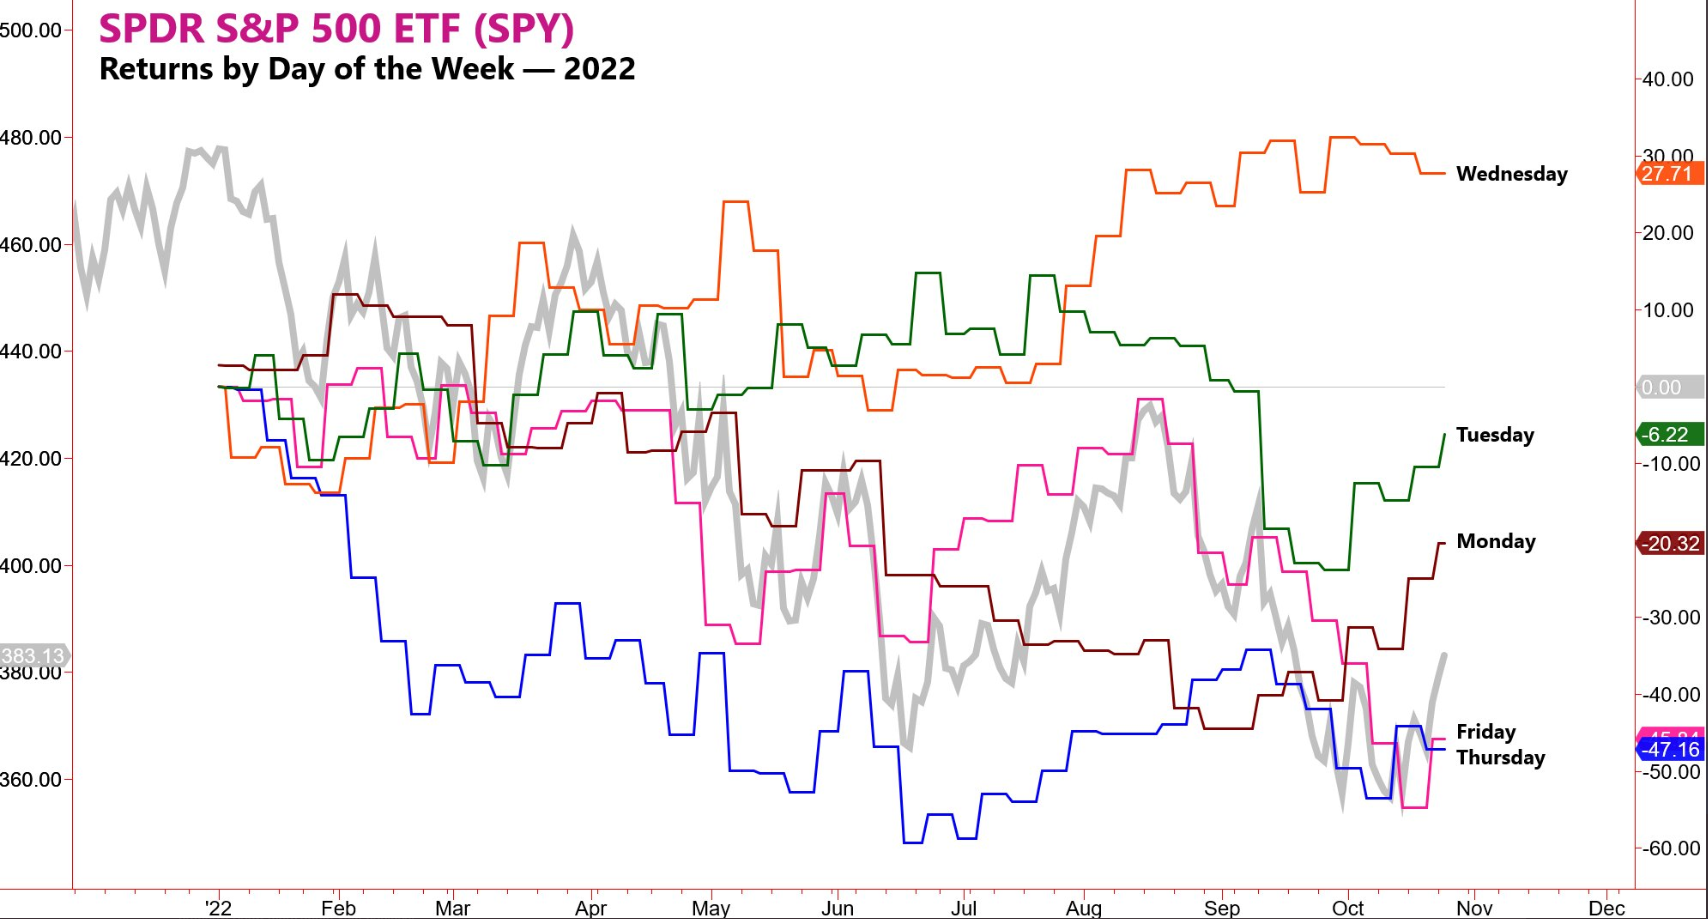 Graf 1 Návratnosť indexu S&P 500 v tomto roku podľa jednotlivých dní v týždni